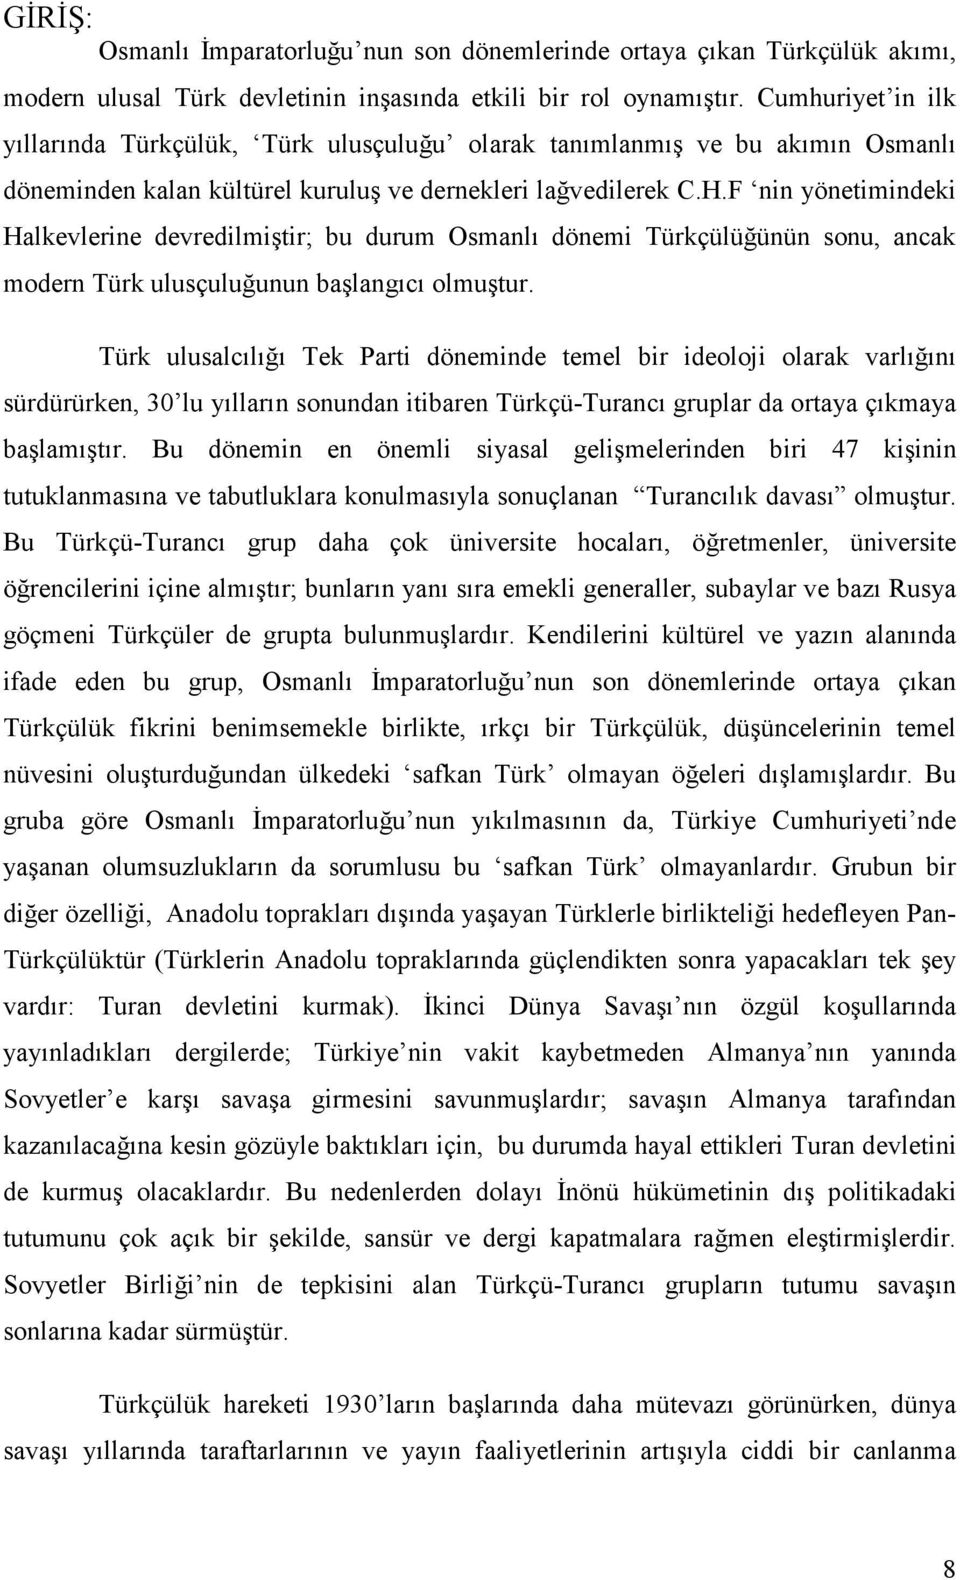 F nin yönetimindeki Halkevlerine devredilmiştir; bu durum Osmanlı dönemi Türkçülüğünün sonu, ancak modern Türk ulusçuluğunun başlangıcı olmuştur.